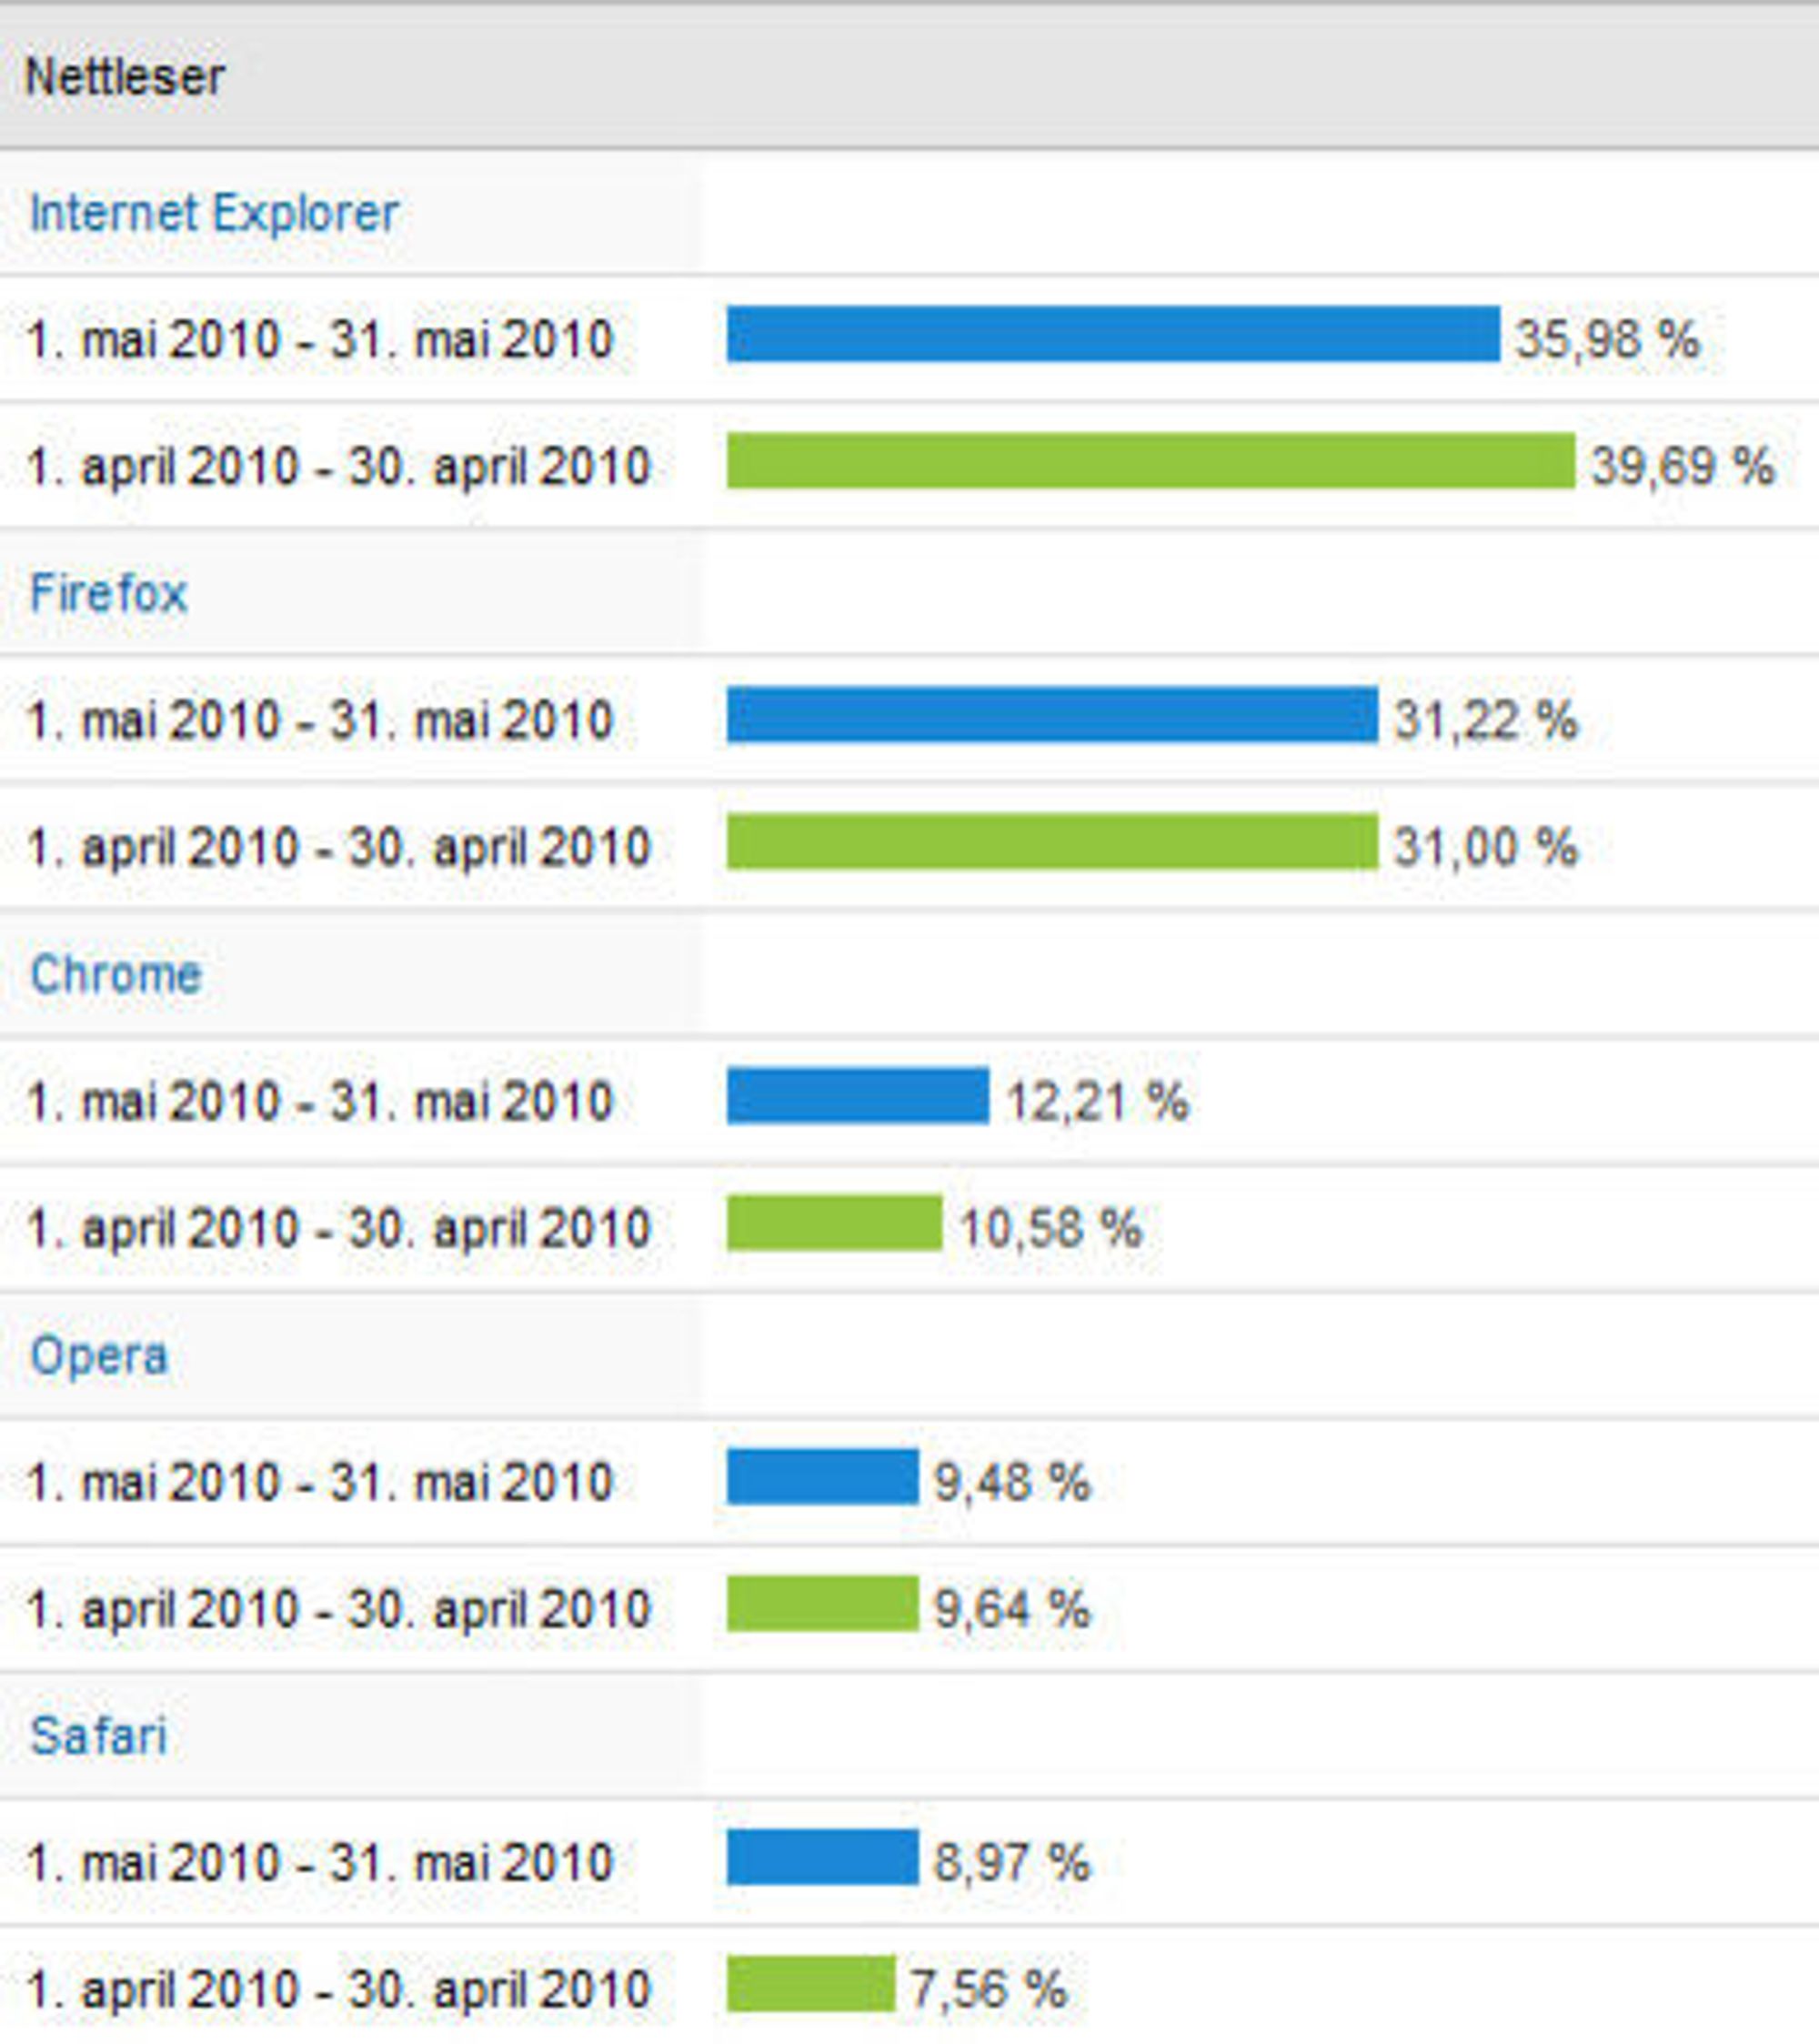 Nettleserandeler på digi.no i april og mai 2010.